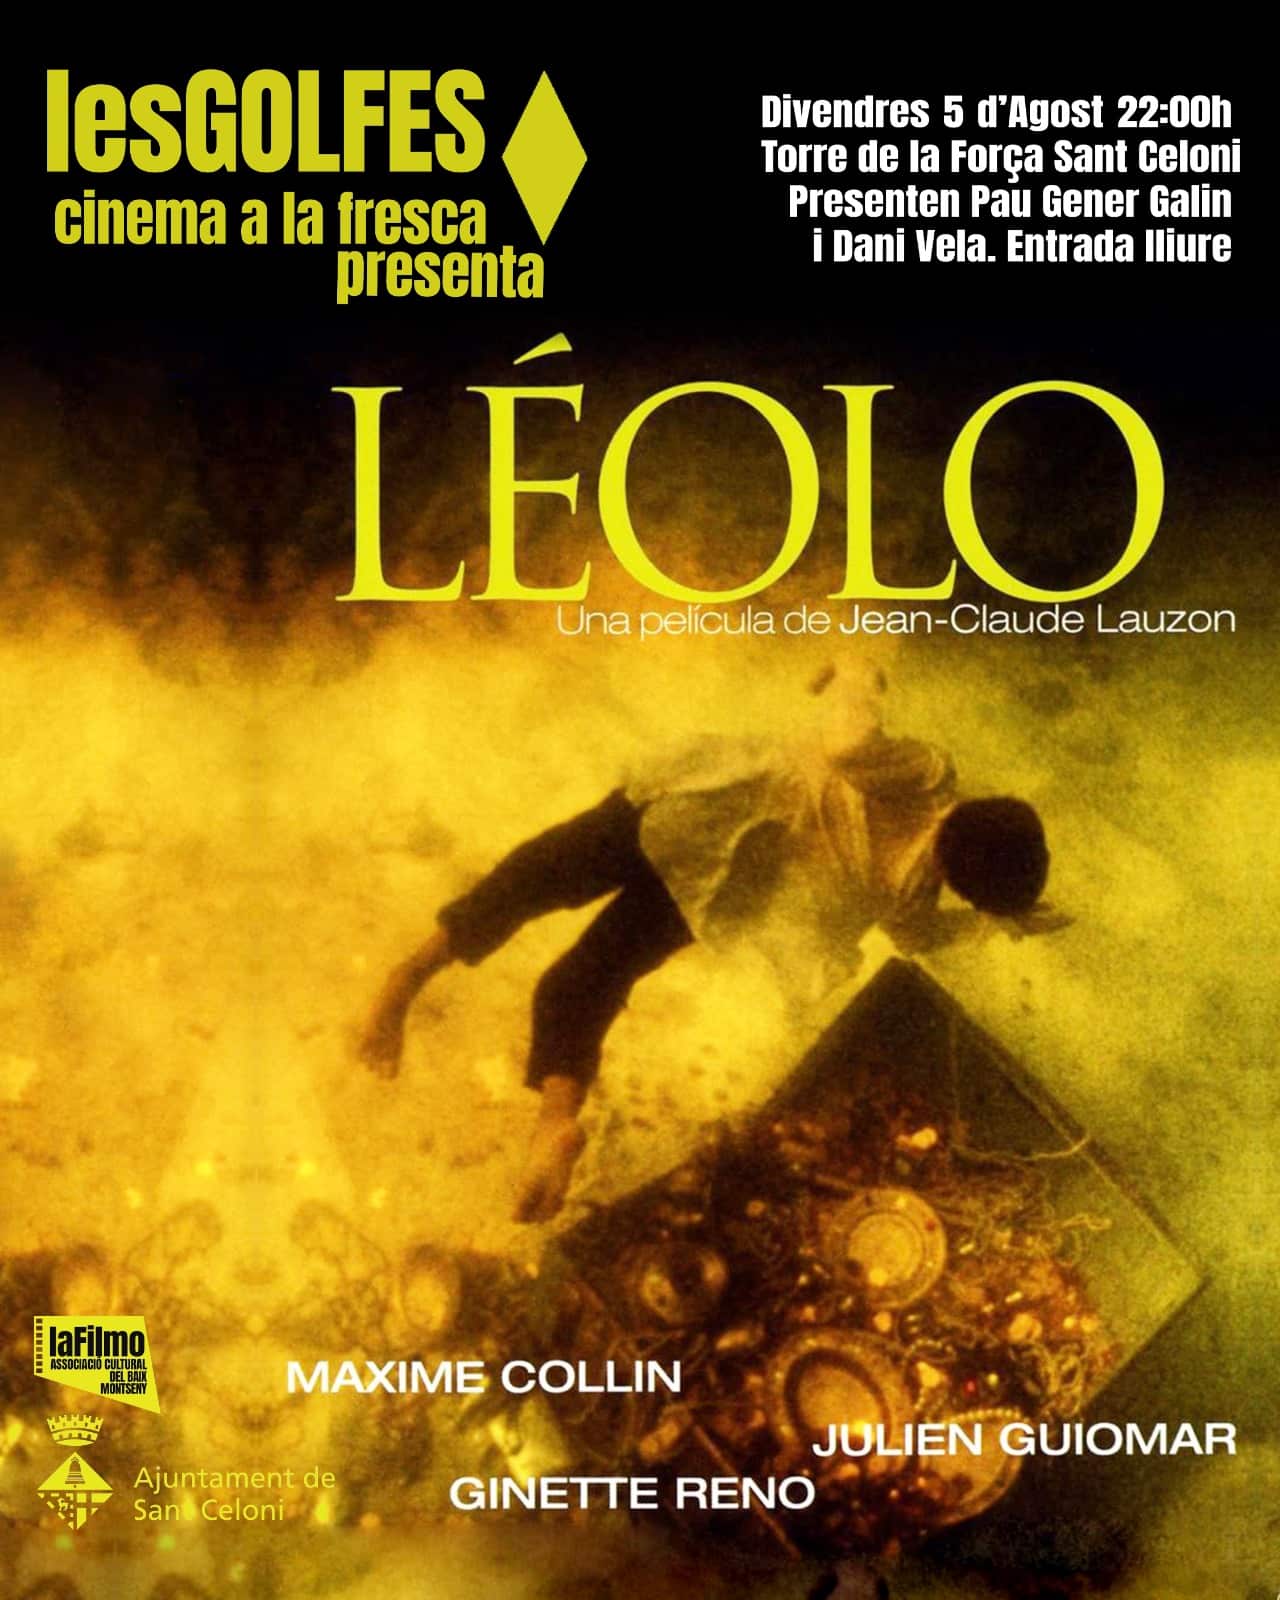 Léolo (1992), dirigida per Jean-Claude Lozon